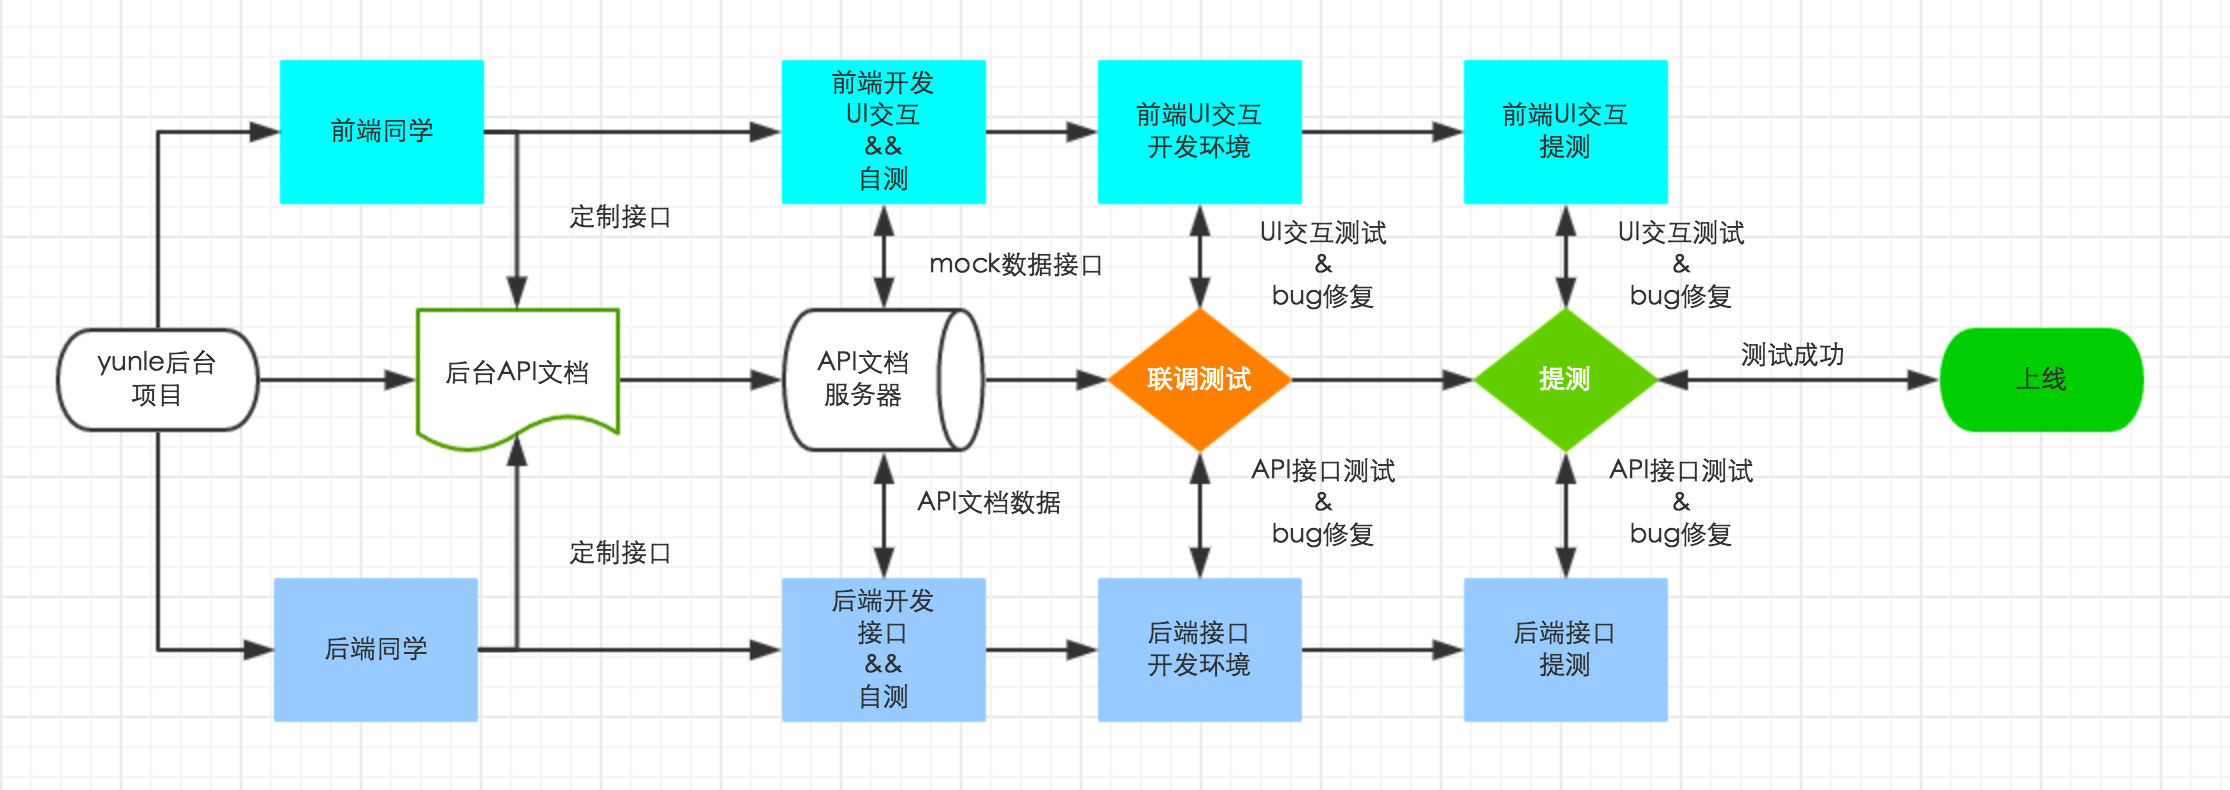 开发流程图